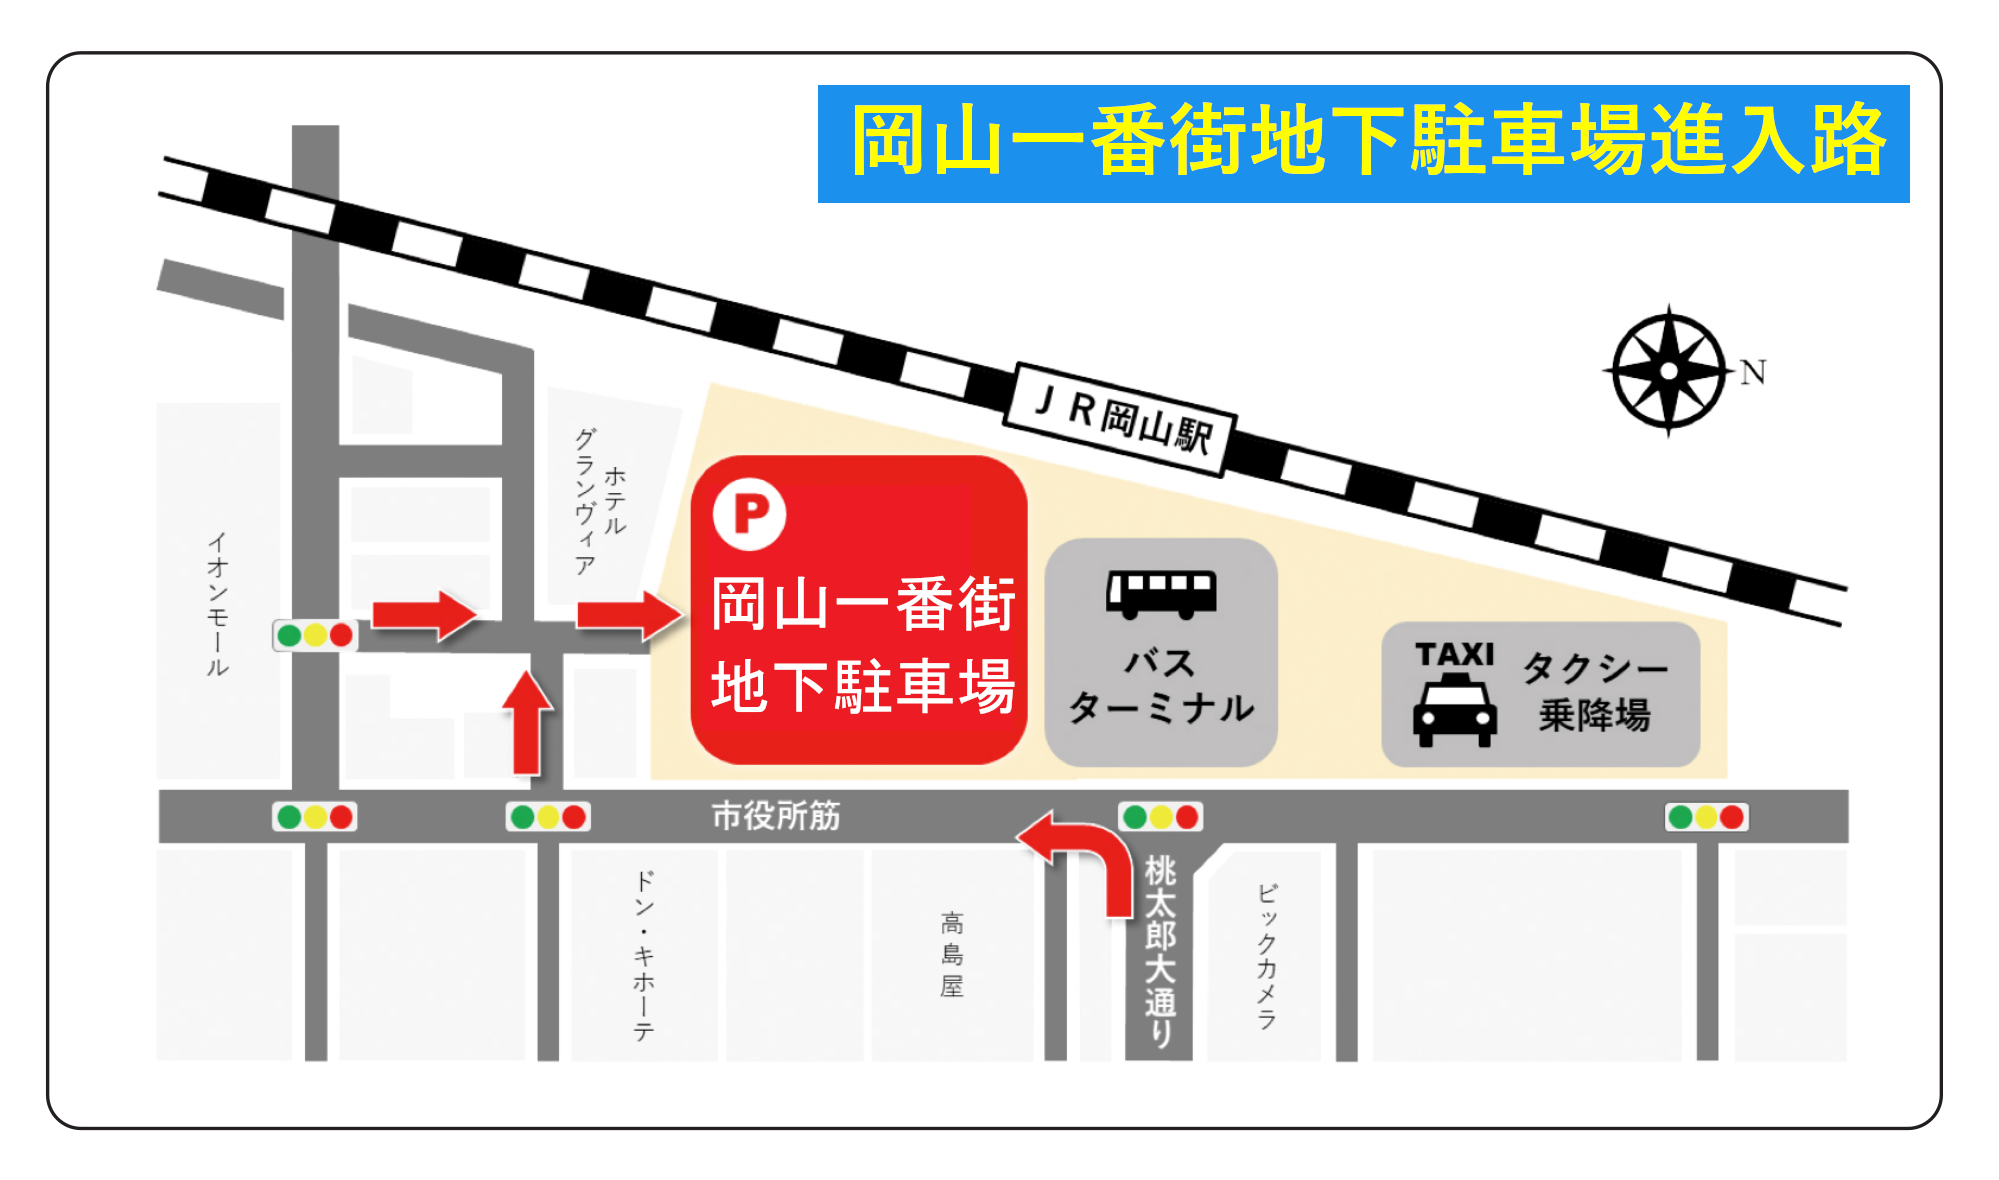 岡山一番街地下駐車場入口へのルート